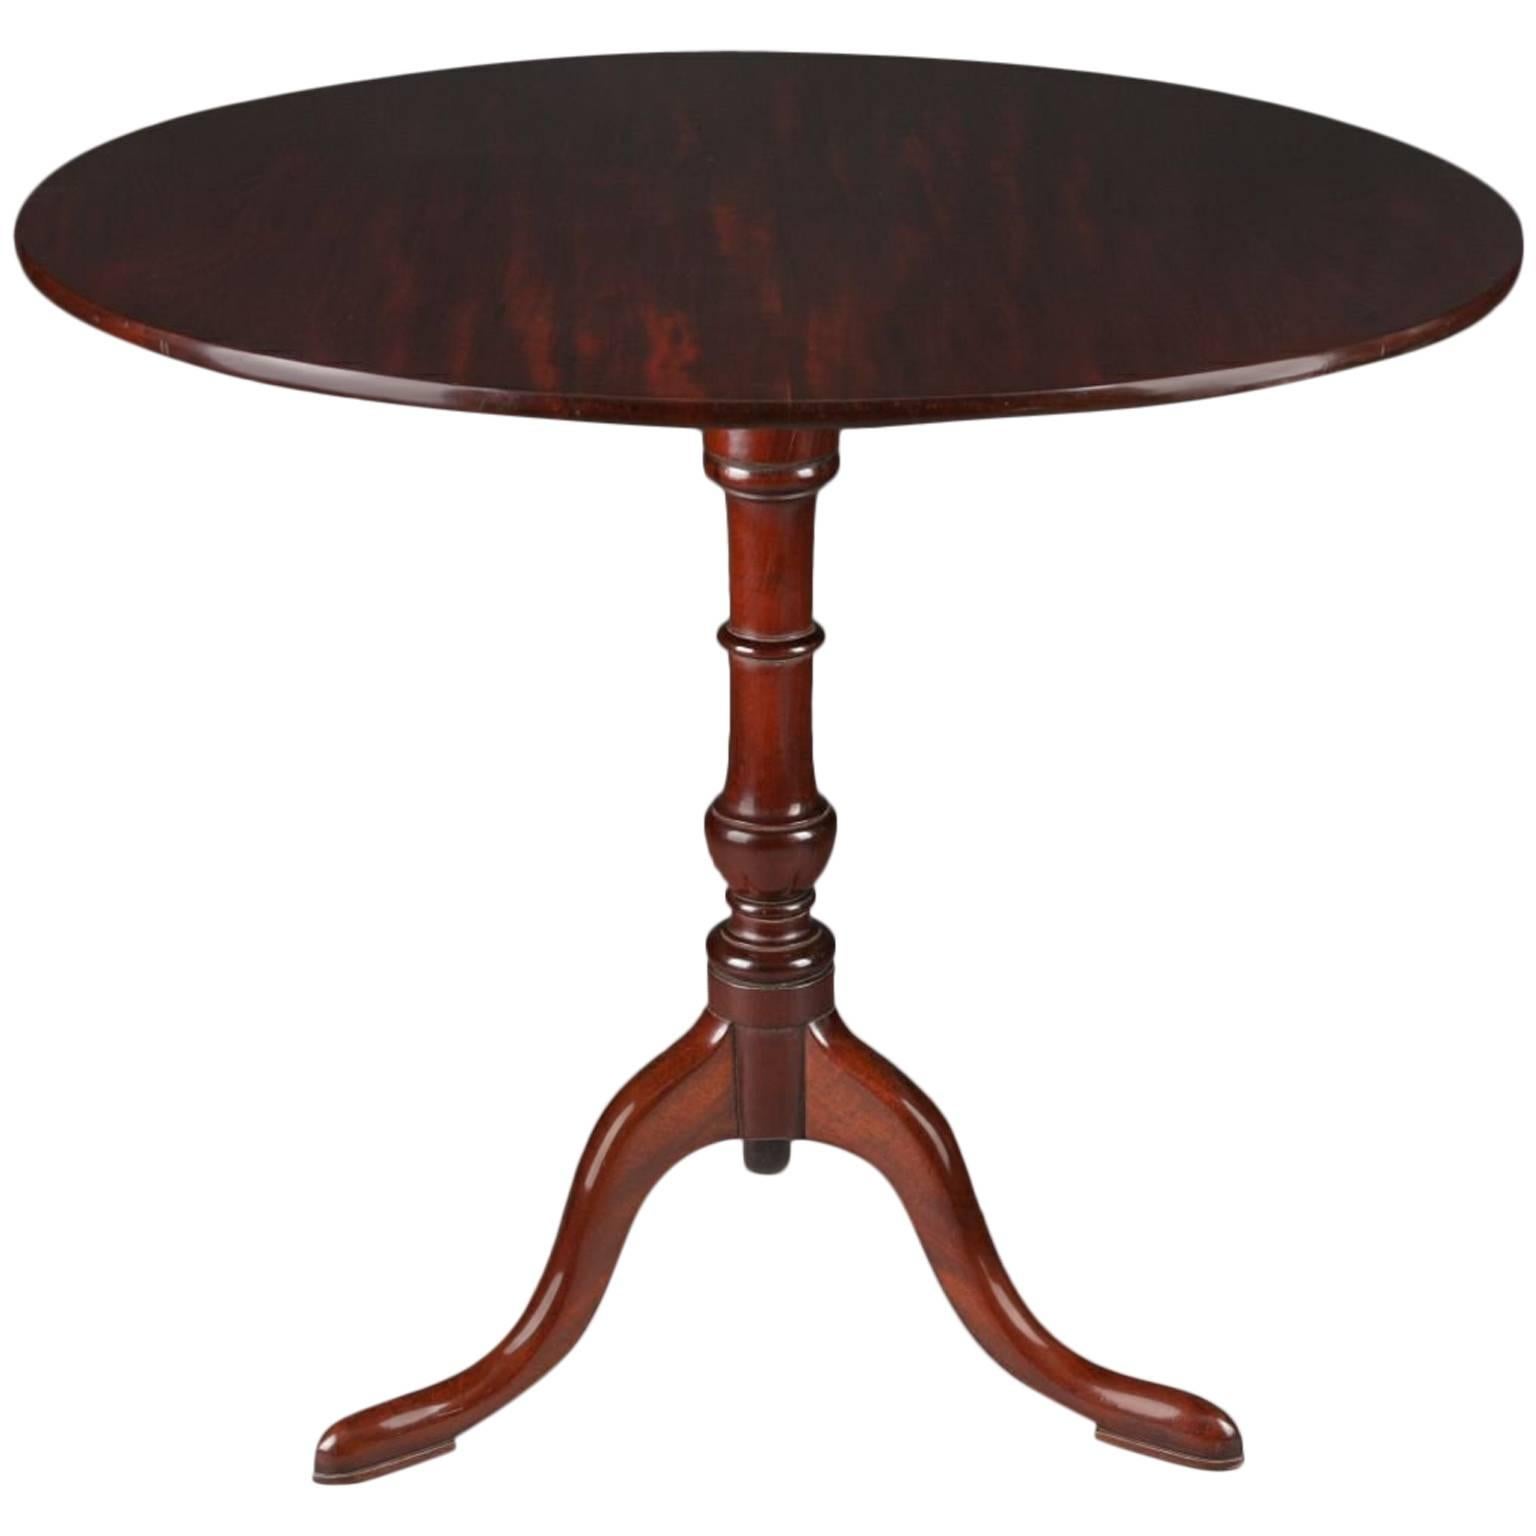 Table pliante ou trépied de style Régence anglaise du 19ème siècle